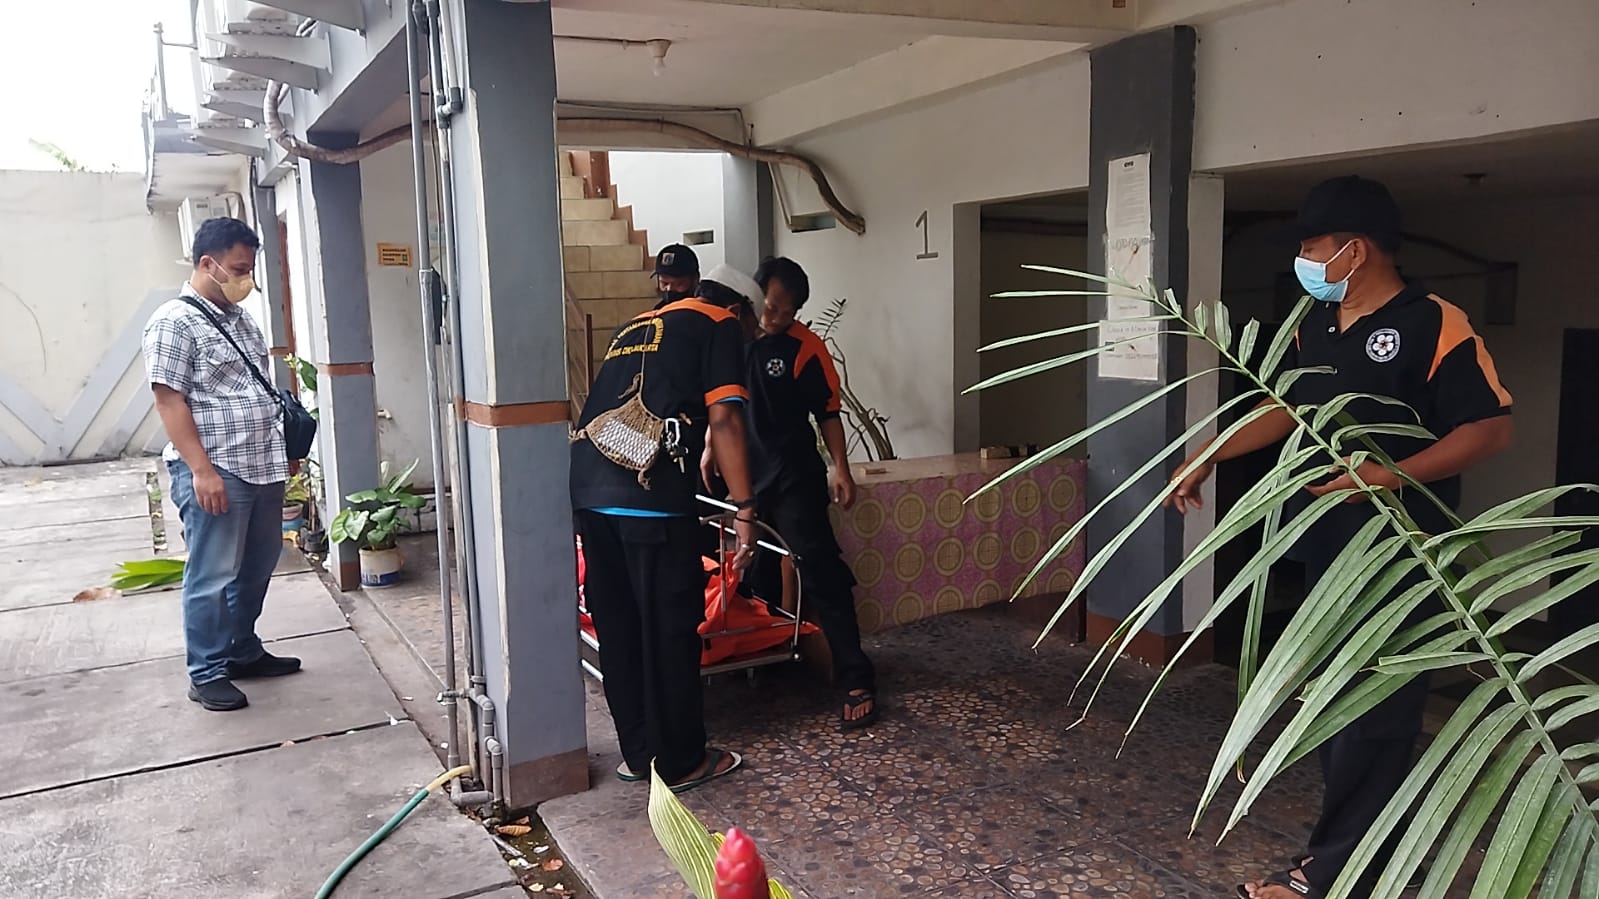 Dugaan Sementara Penyebab Pria Tua Tewas di Hotel Setelah Bercinta, Polisi: Karena Sakit